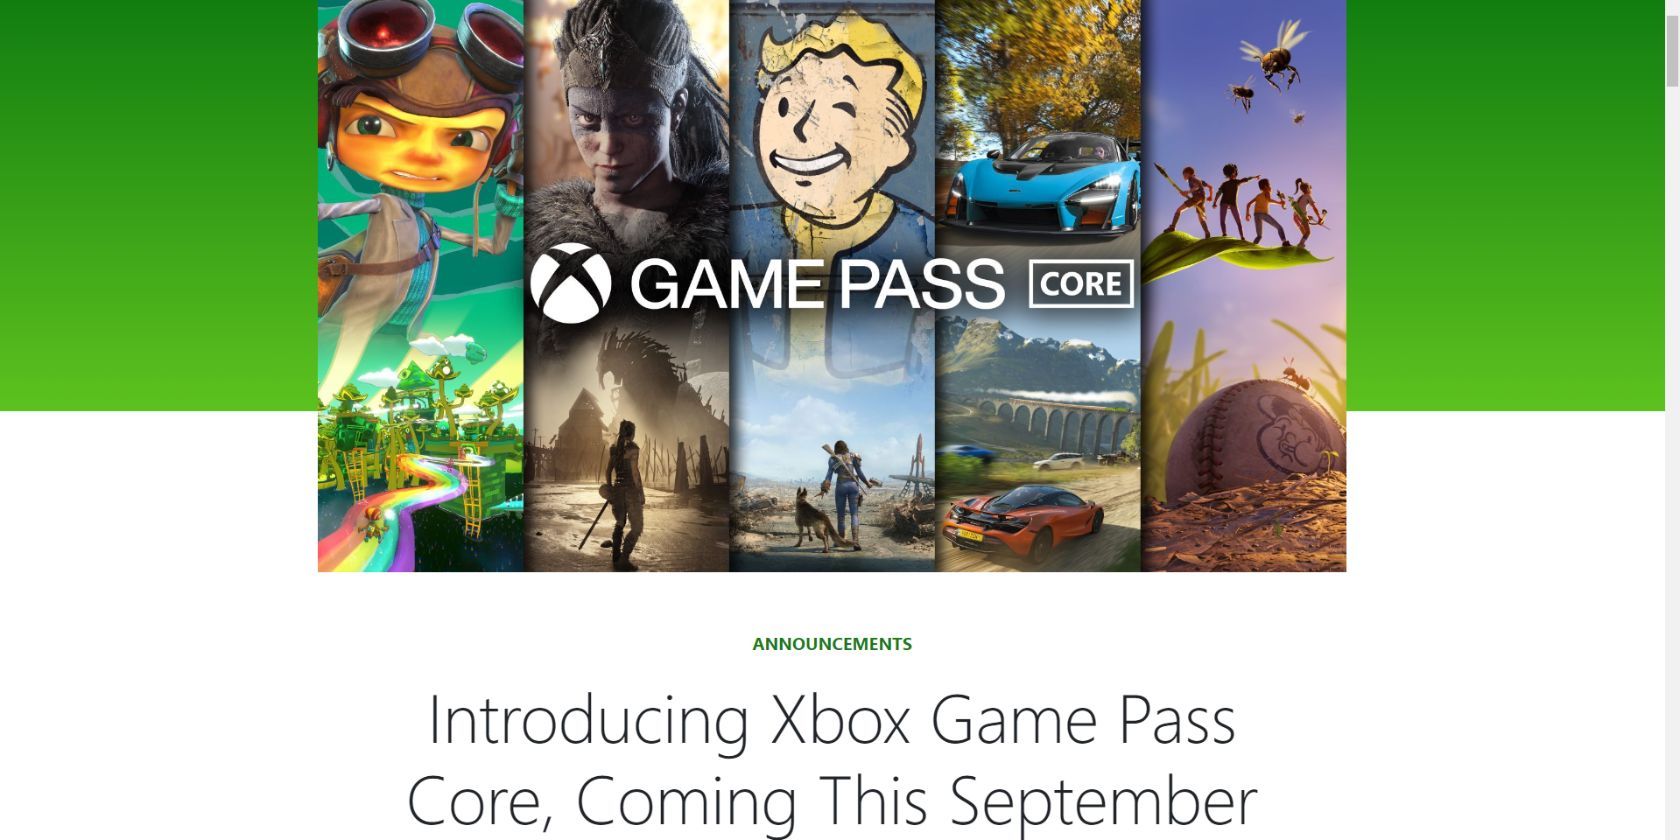 Hình ảnh chính và tiêu đề cho thông báo Xbox về Game Pass Core